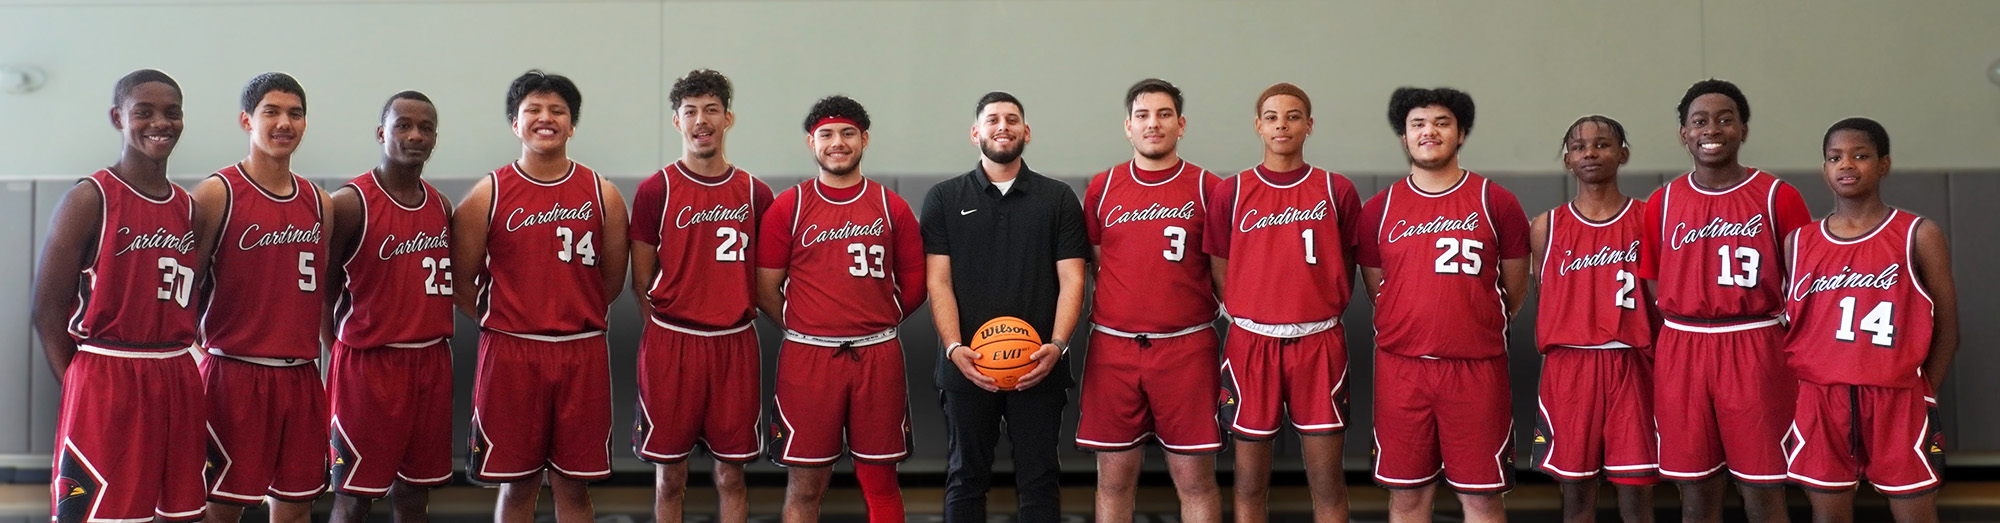 Boys basketball team on the court with their coach